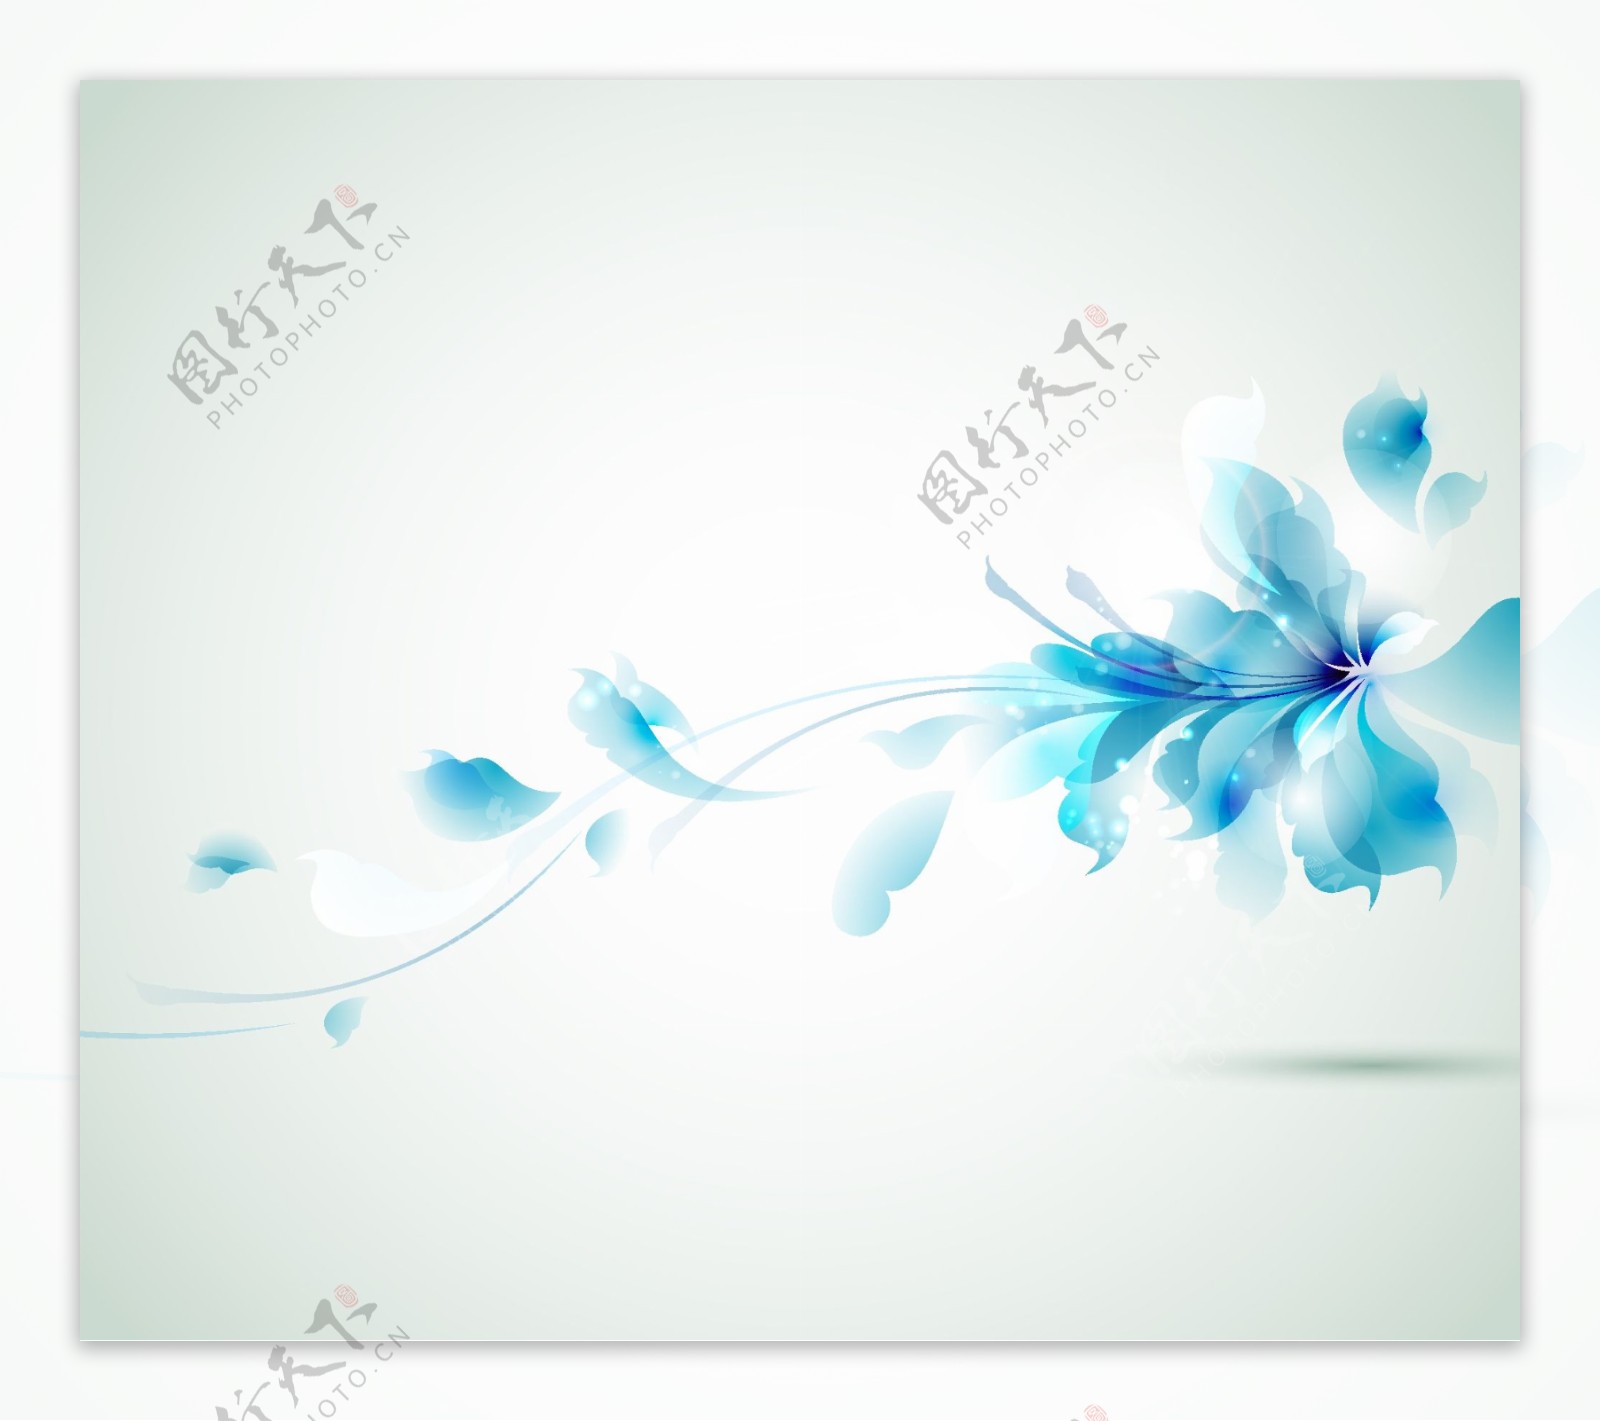 蓝色炫彩花朵